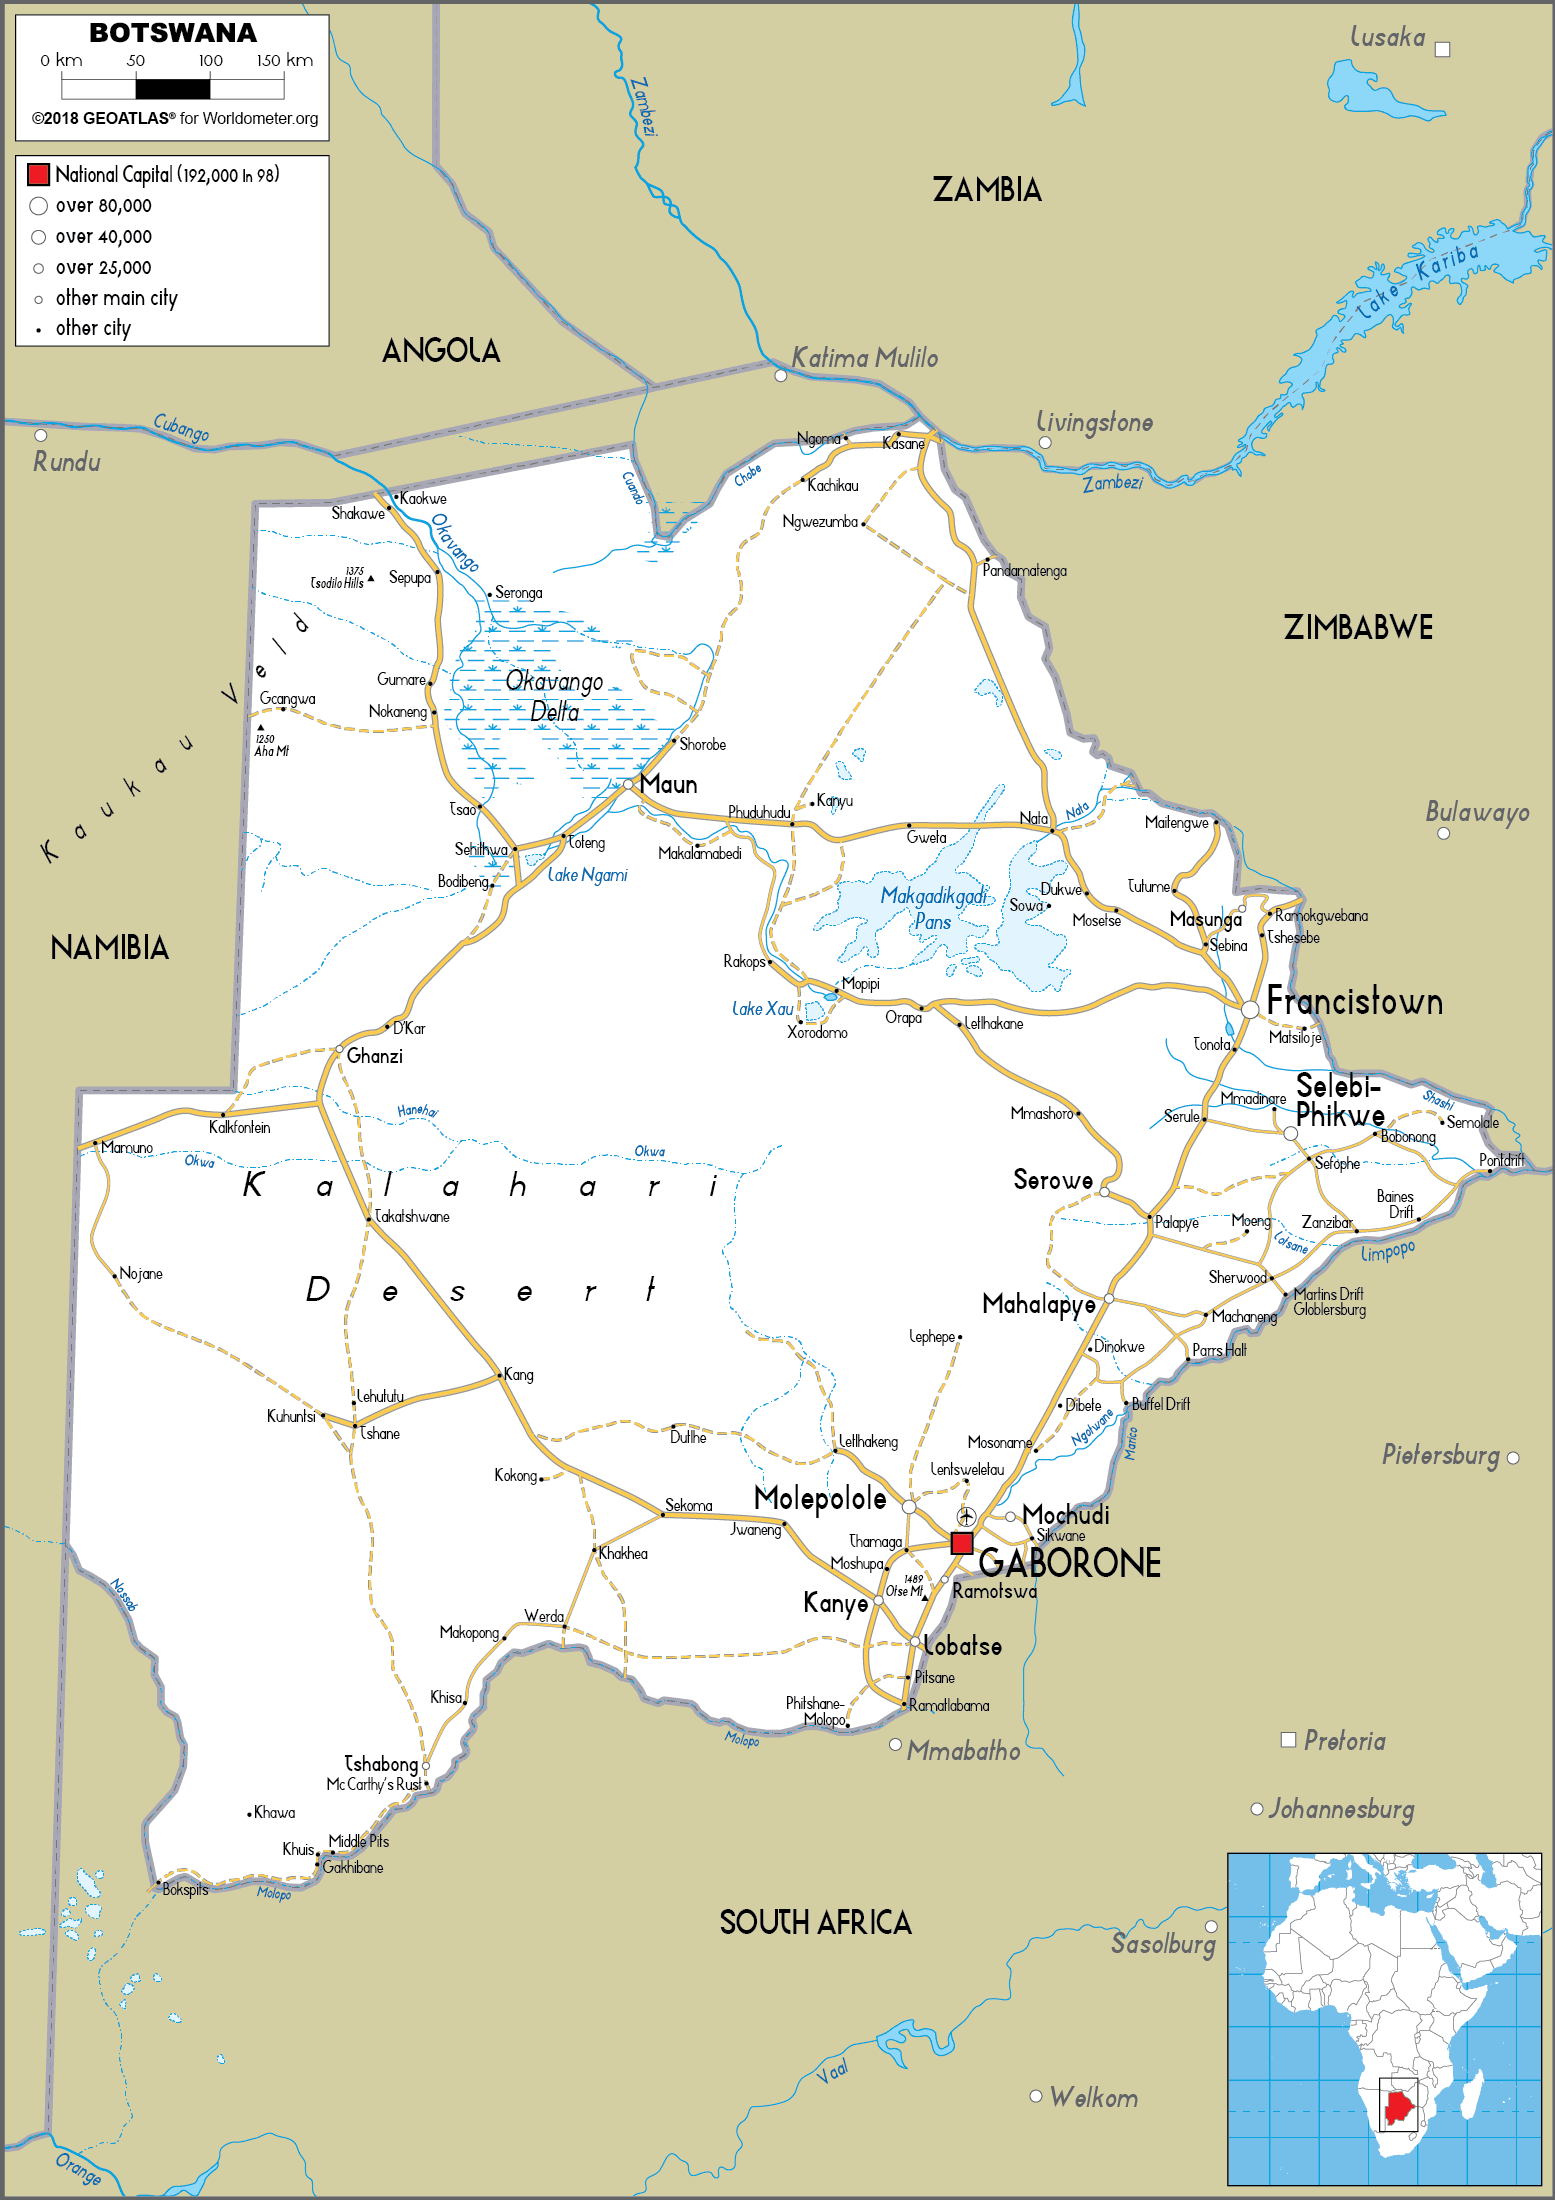 [Update] Bản đồ hành chính đất nước Botswana (Botswana Map) phóng to năm 2022 18